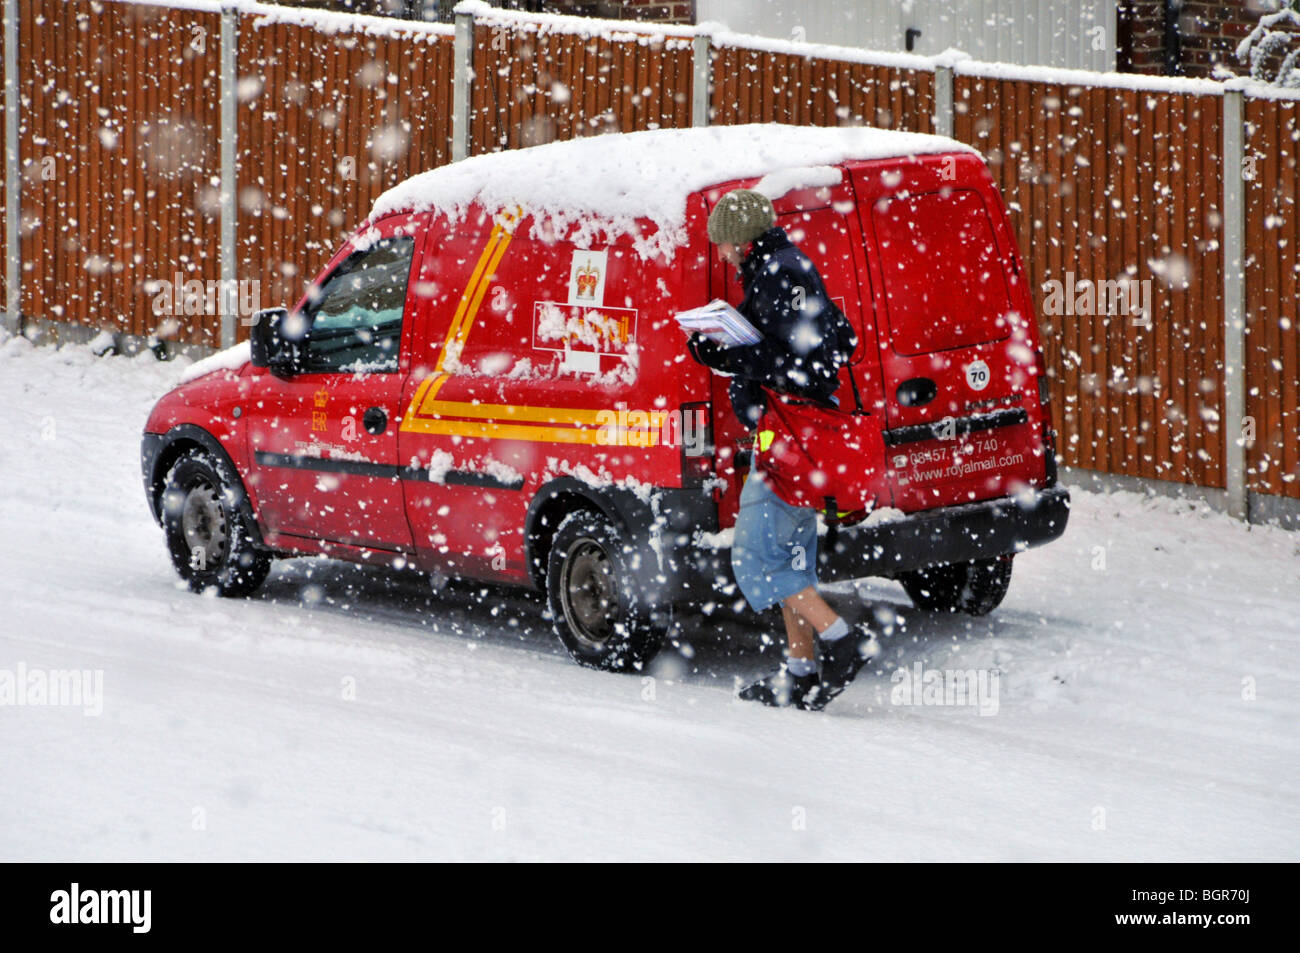 Kaltes Winterwetter schneit auf Royal Mail Lieferung Postmann arbeiten Aus Postauto in Wohnstraßenlandschaft im Schneesturm Brentwood Essex England Großbritannien Stockfoto